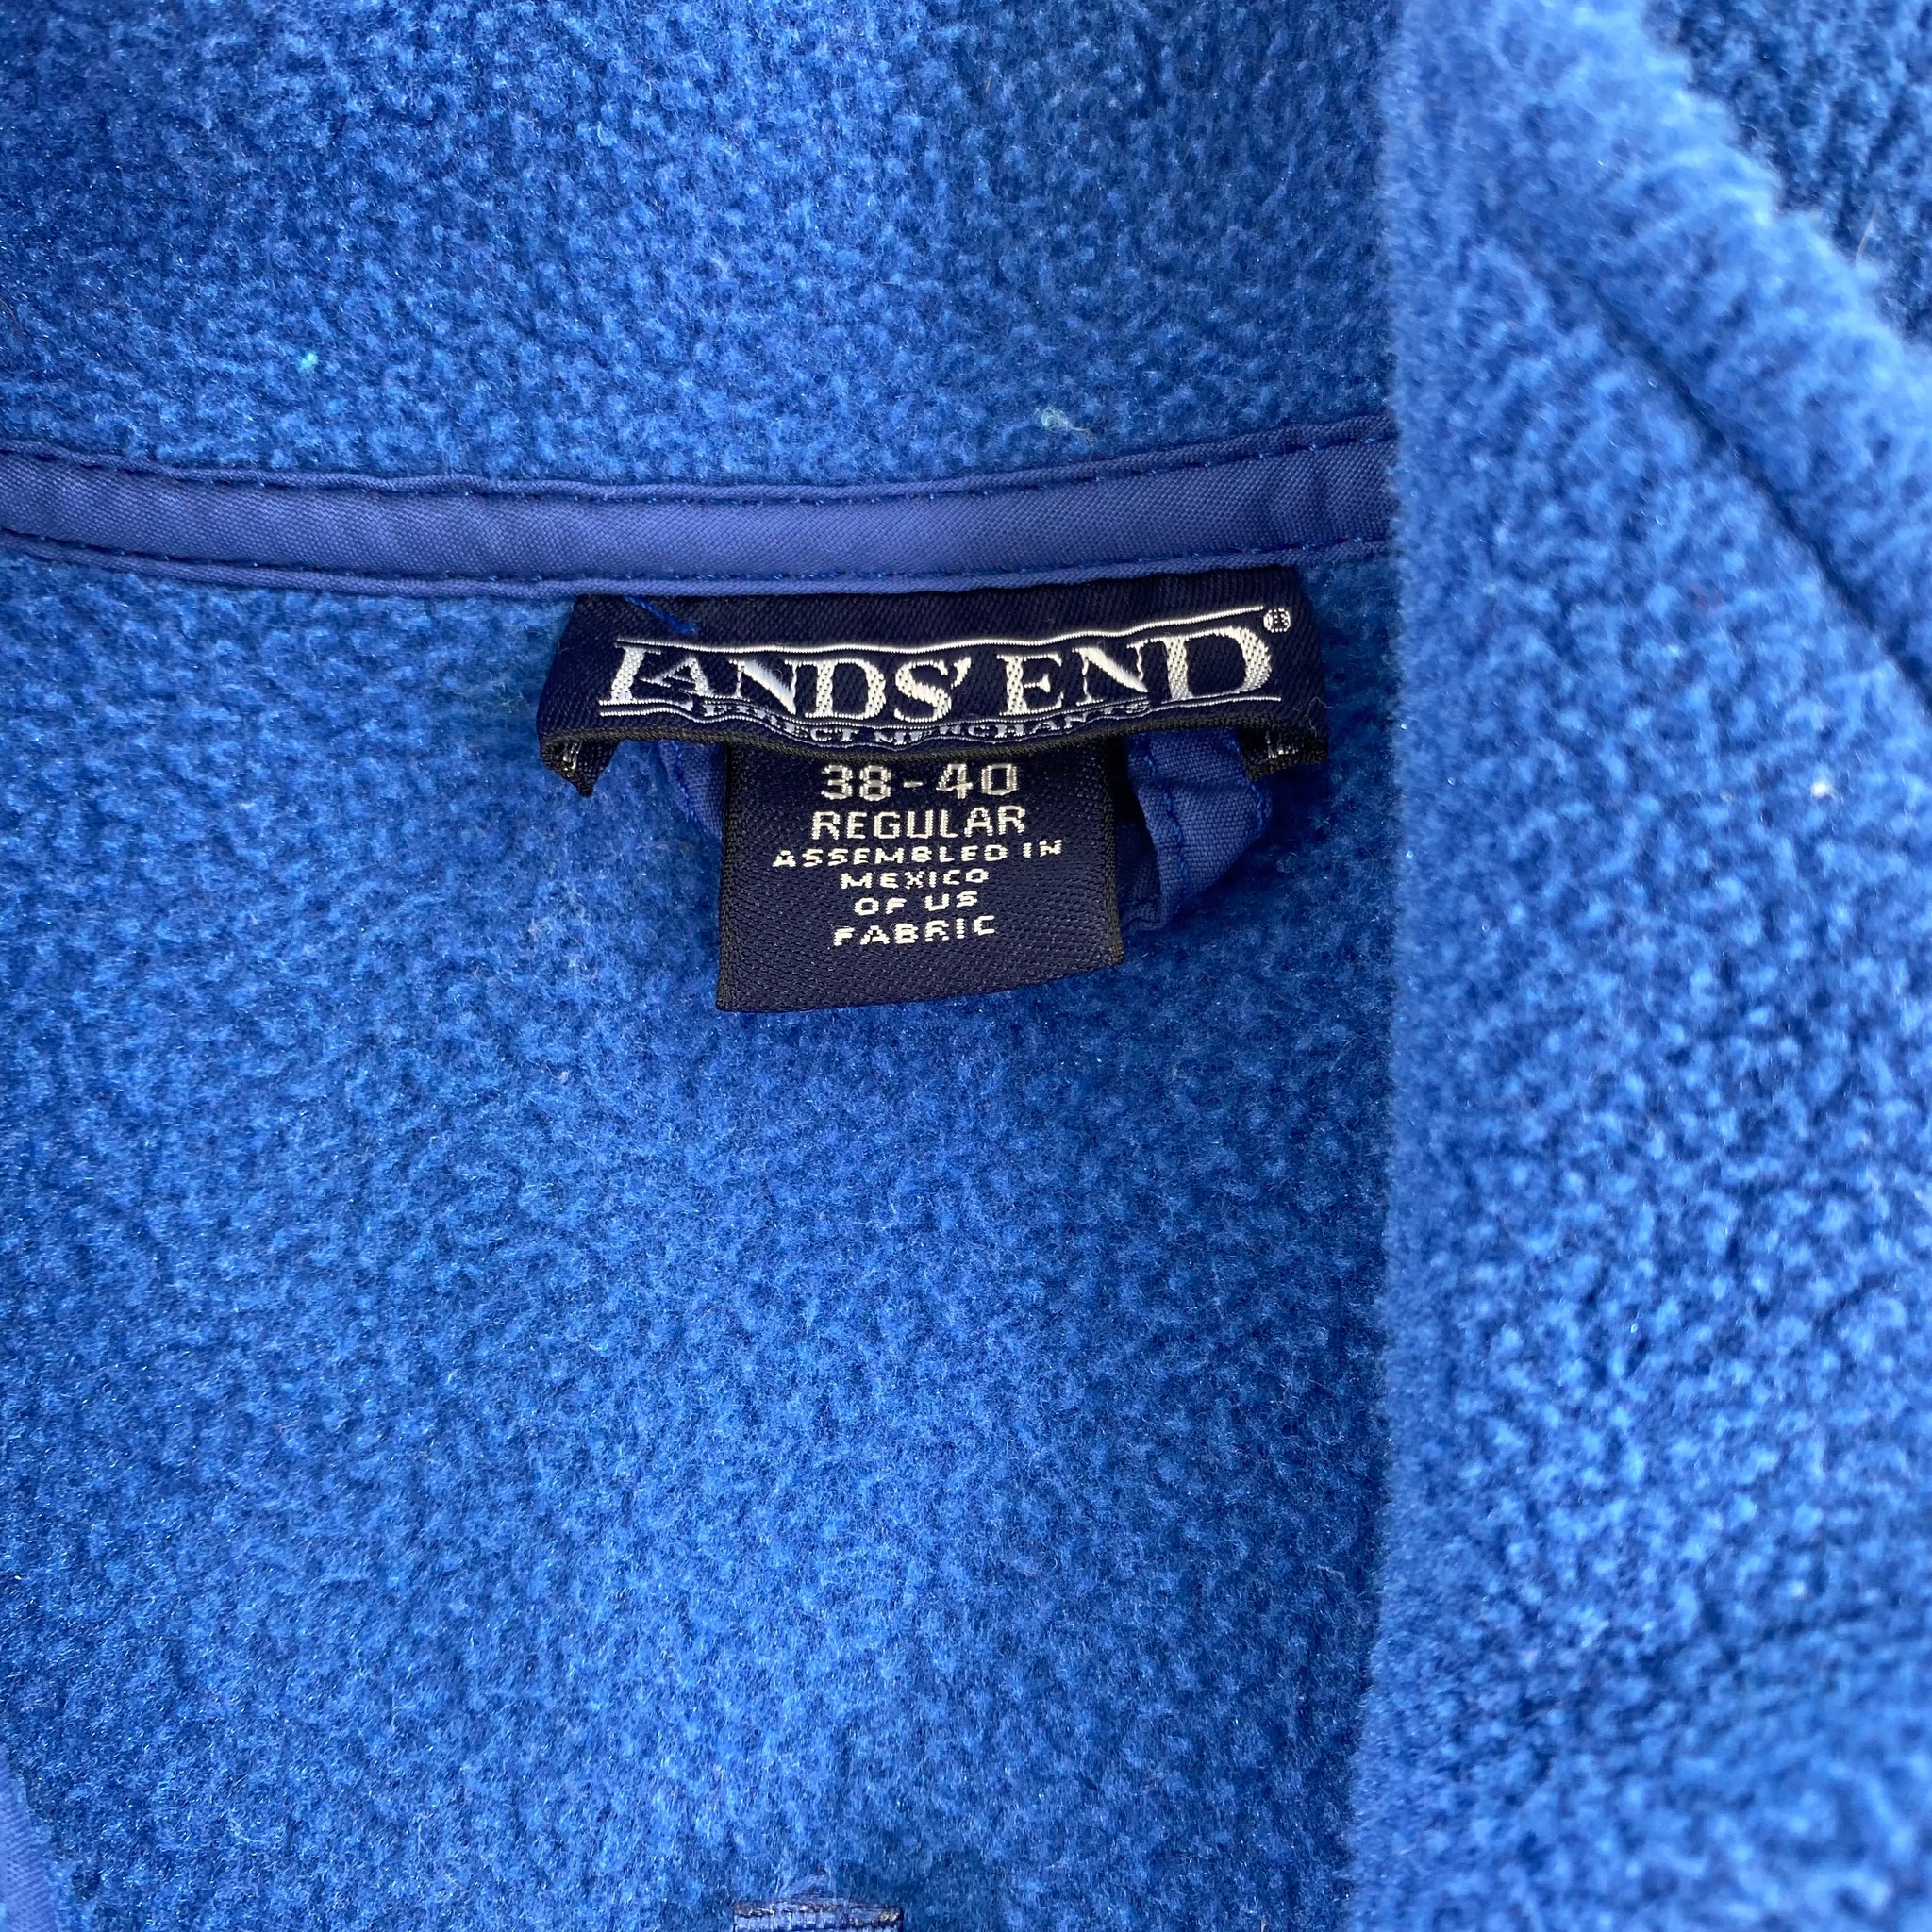 90s Landsend fleece XL